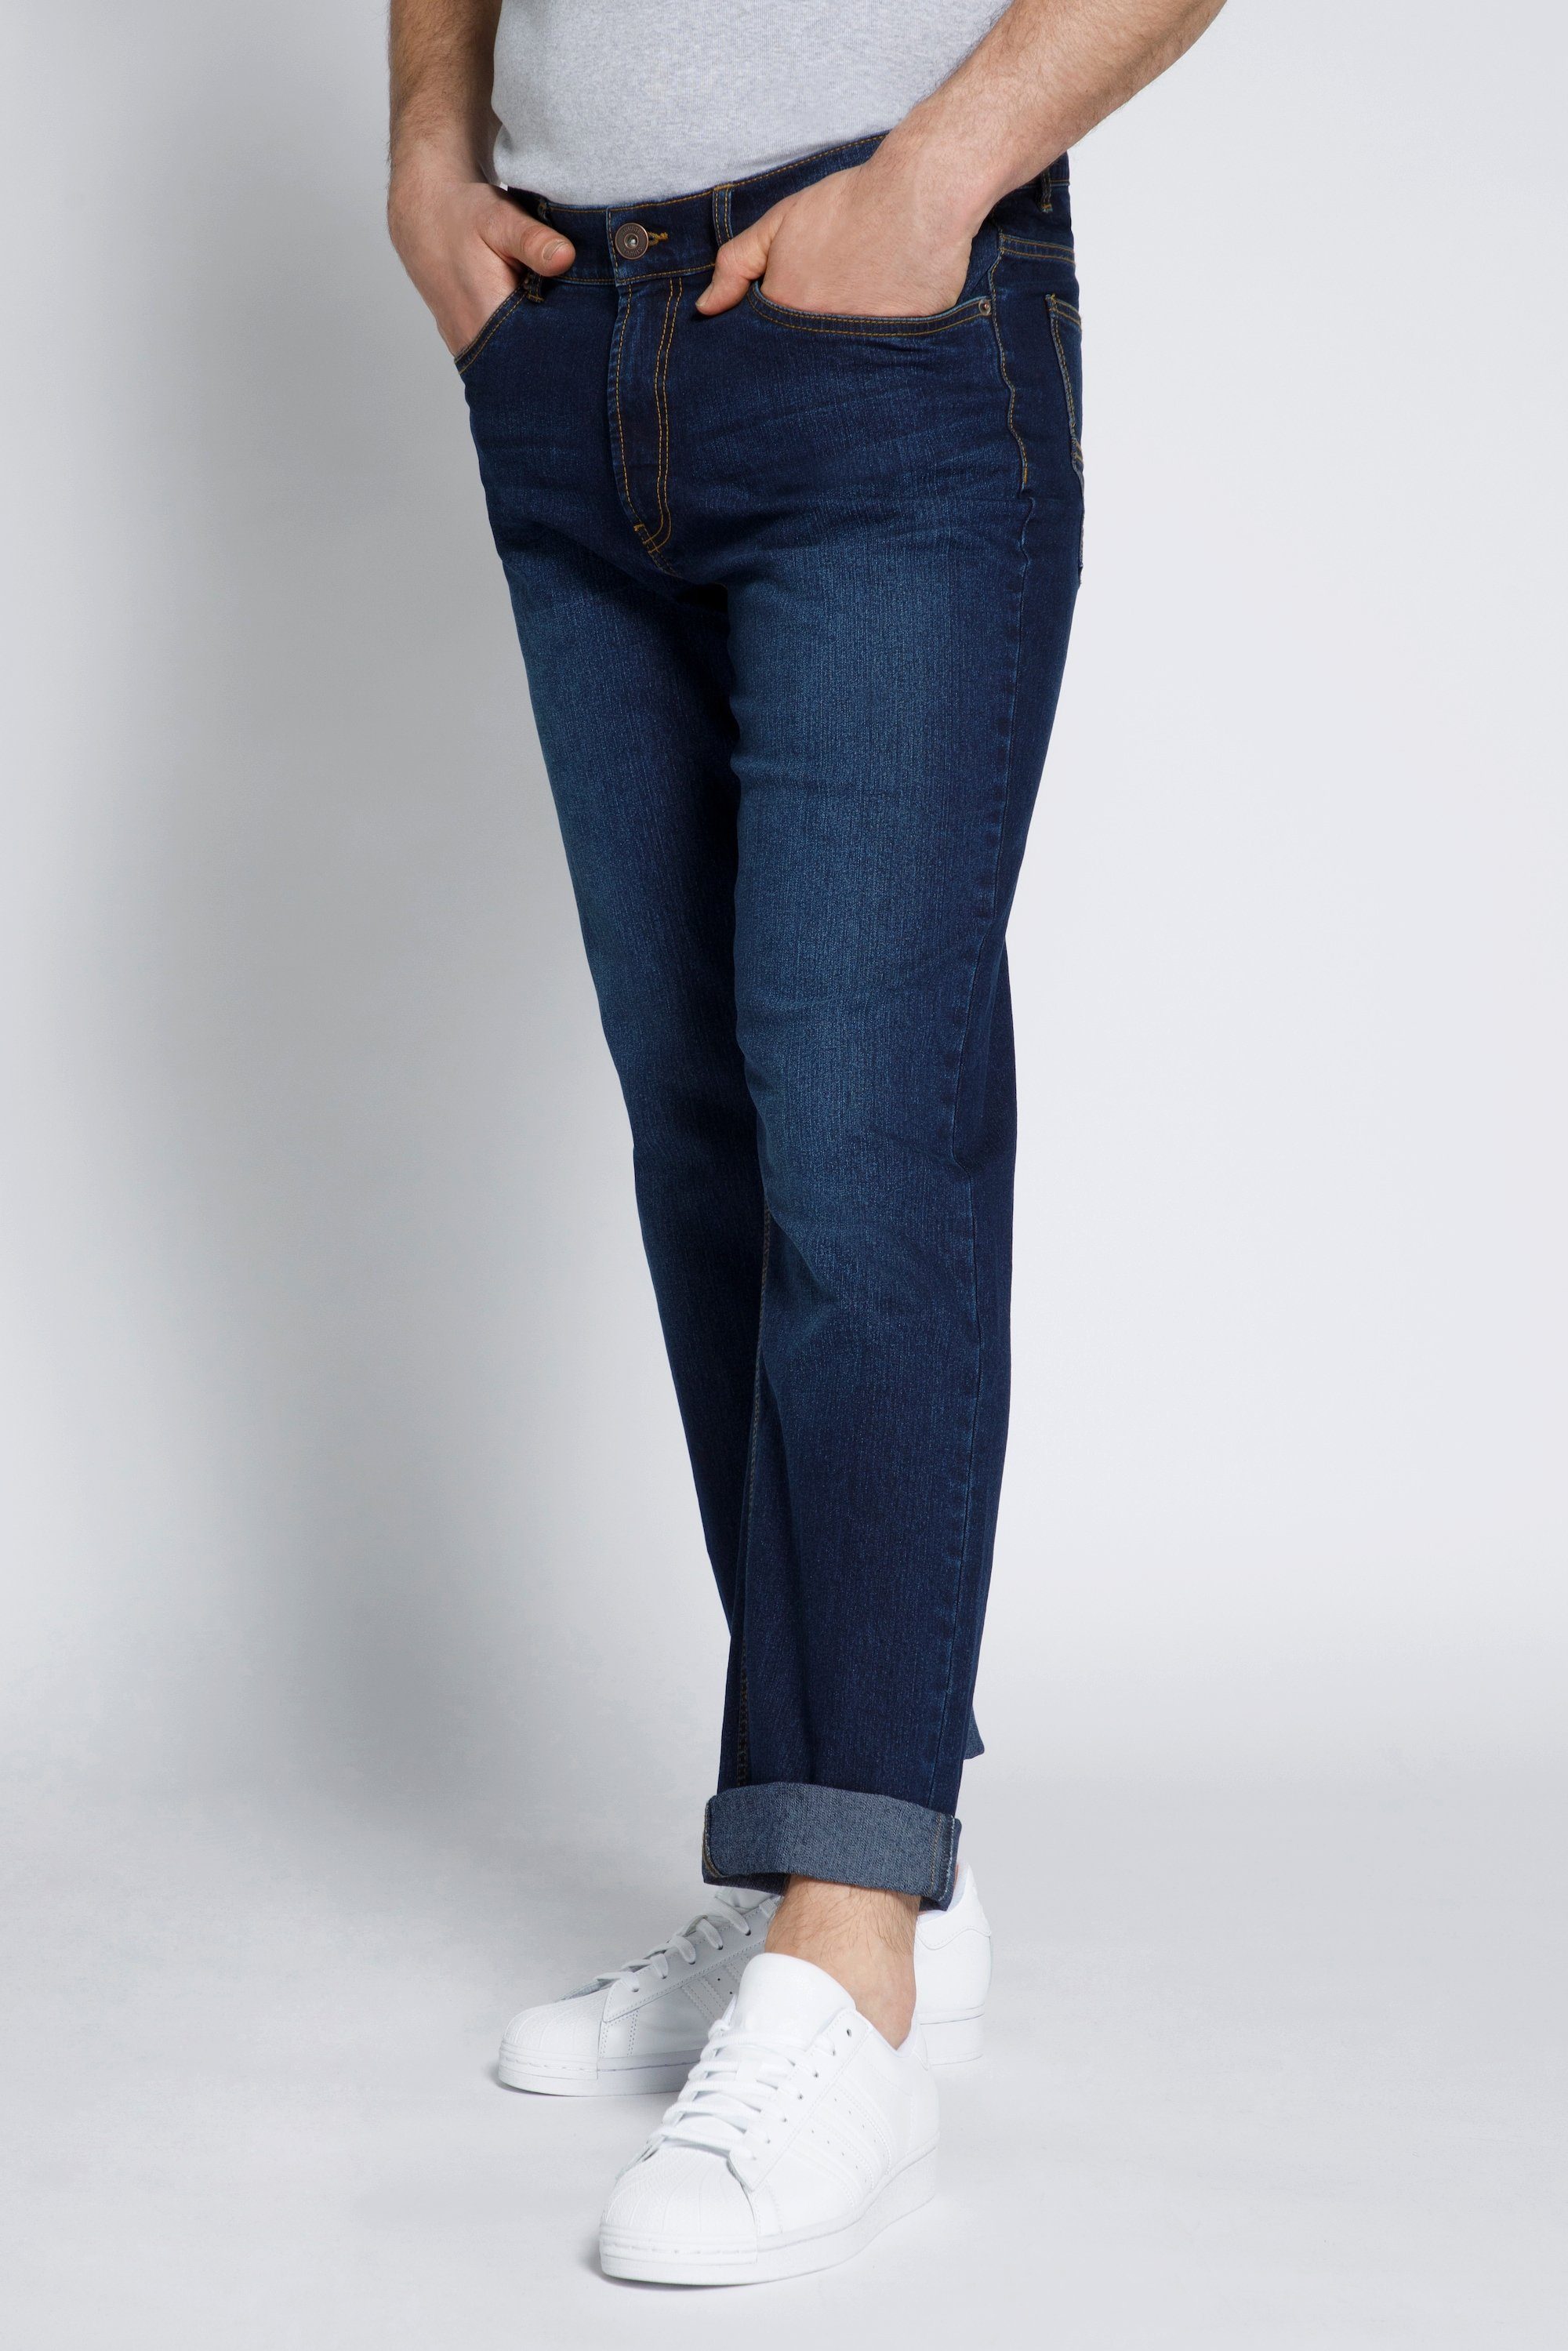 STHUGE 5-Pocket-Jeans STHUGE Jeans Bauch Fit Regular Fit 5 Pocket